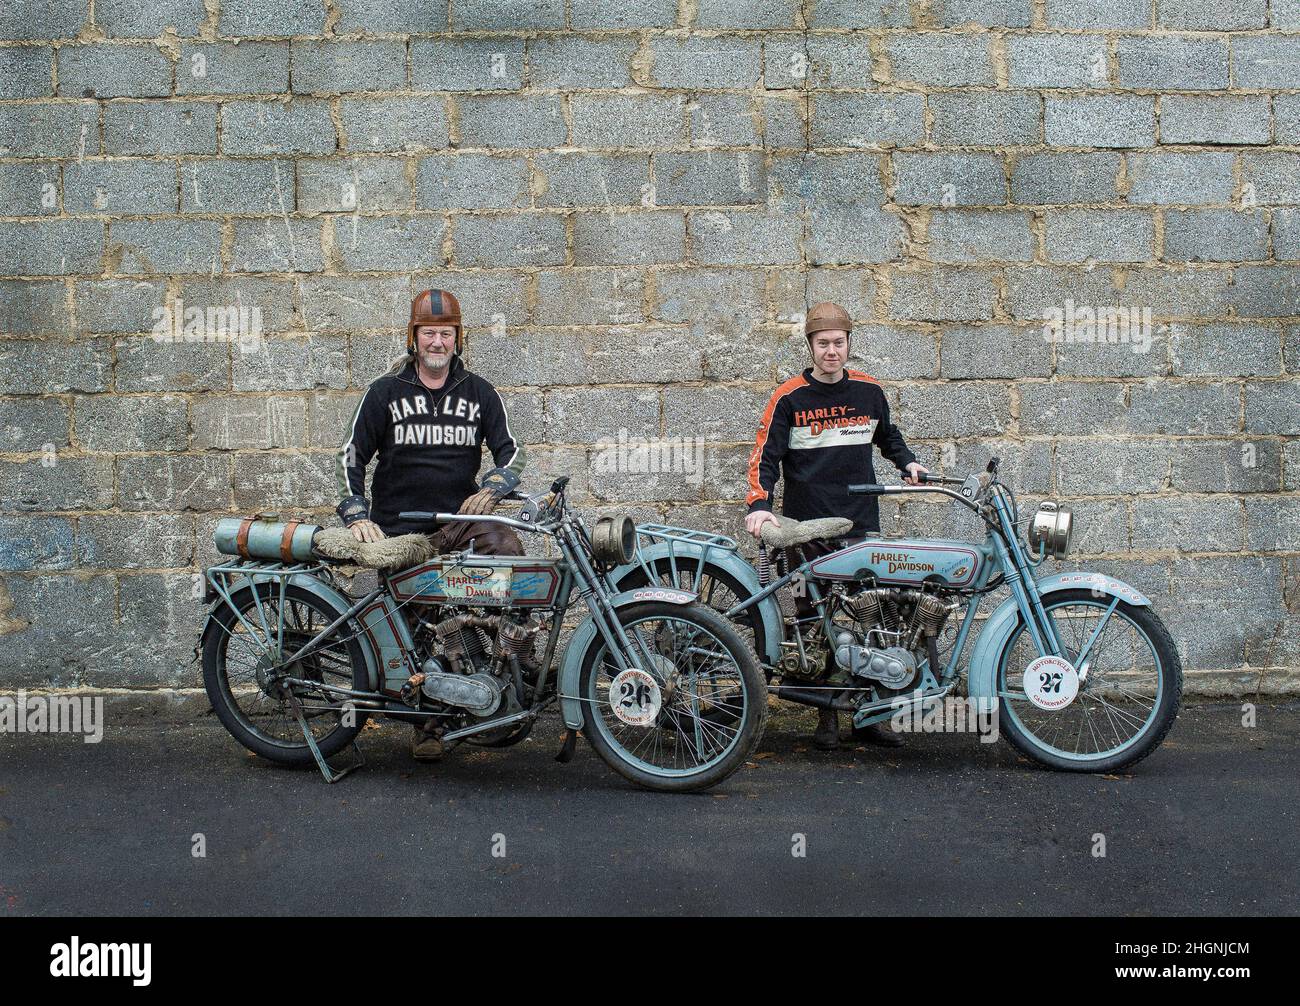 Thomas Trapp, ein Harley-Davidson Motorradhändler in deutscher Sprache, und sein Sohn Eric, der beide eine Harley aus dem Jahr 1916 fahren. Stockfoto